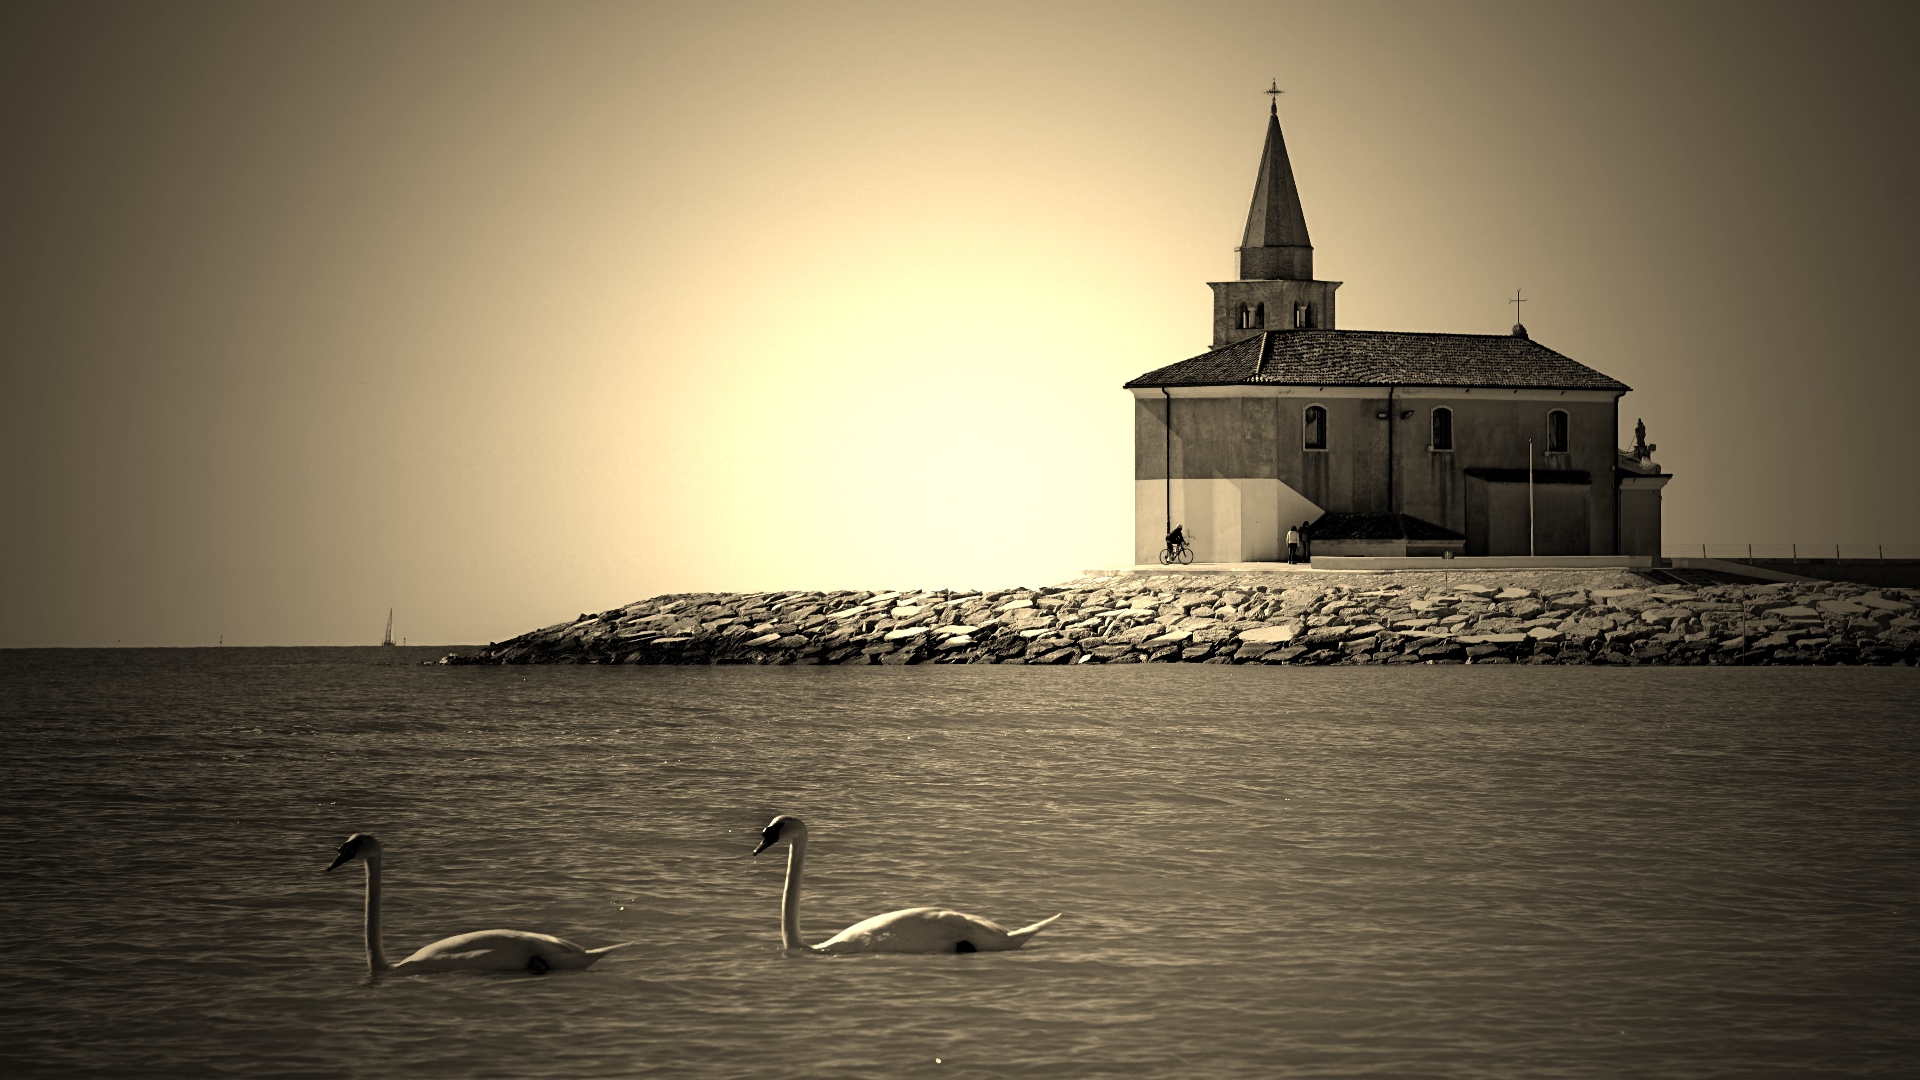 Kirche Madonna dell’Angelo am Strand von Caorle mit Schwänen im Meer